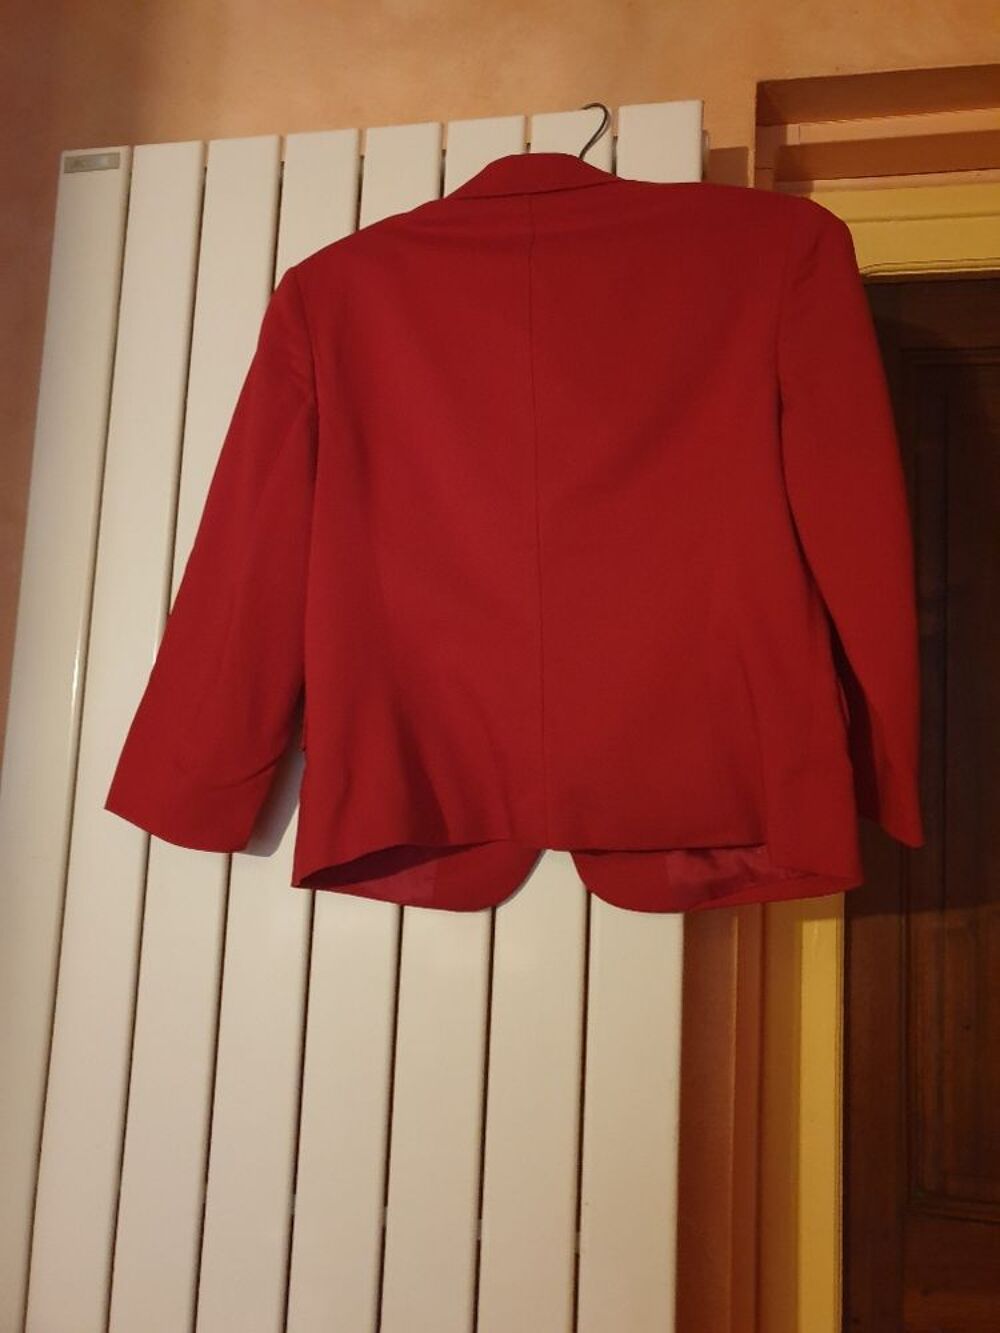 Ensemble rouge, veste et jupe, chic, vintage.
Vtements